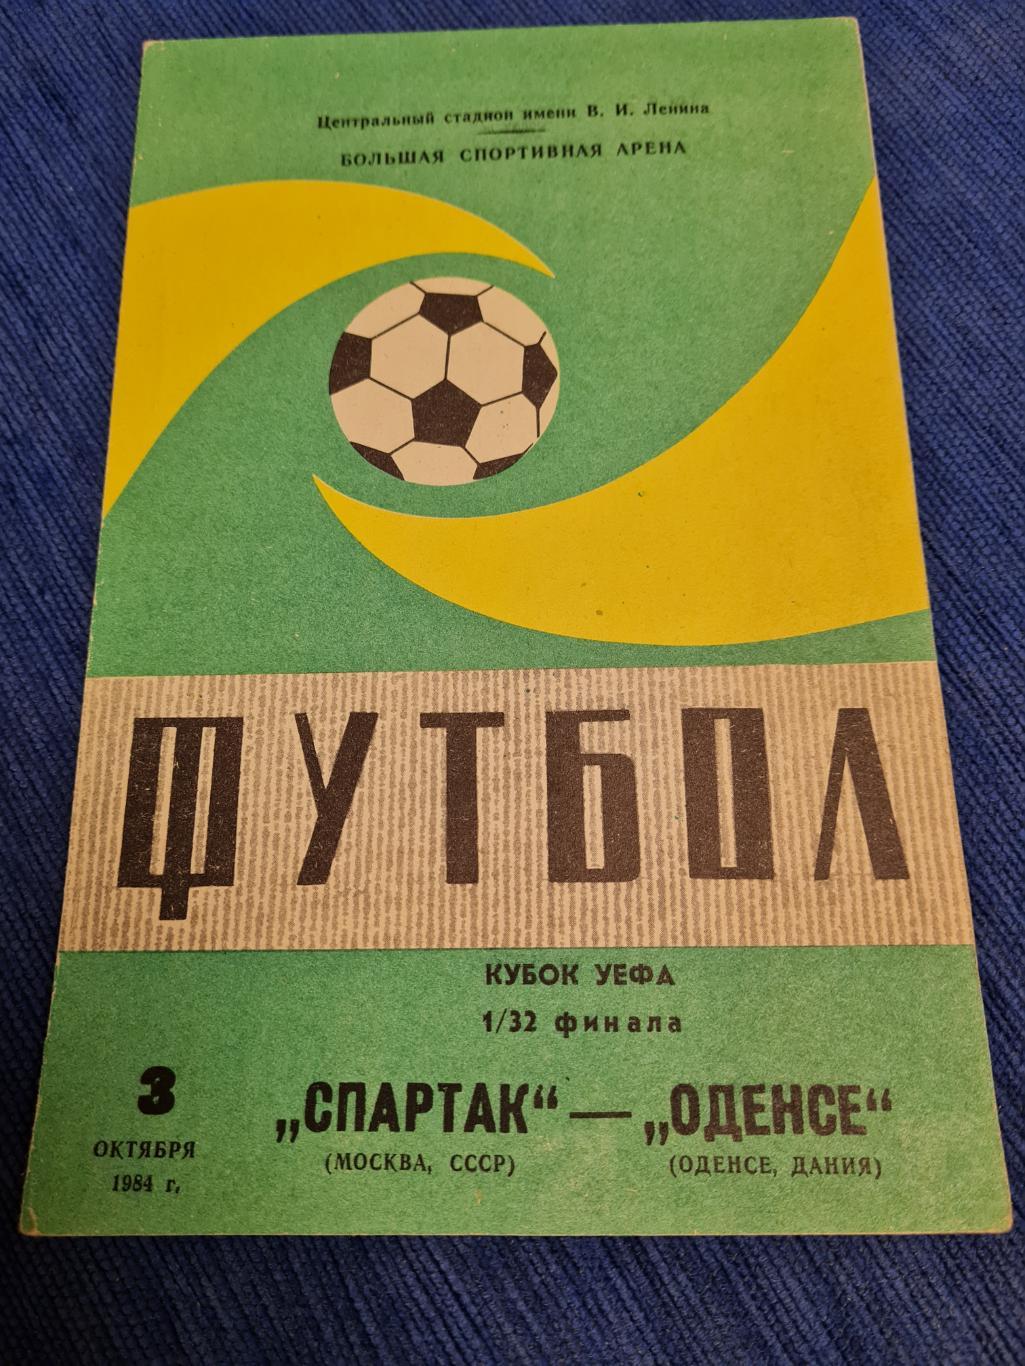 03.10.1984 Спартак - Оденсе